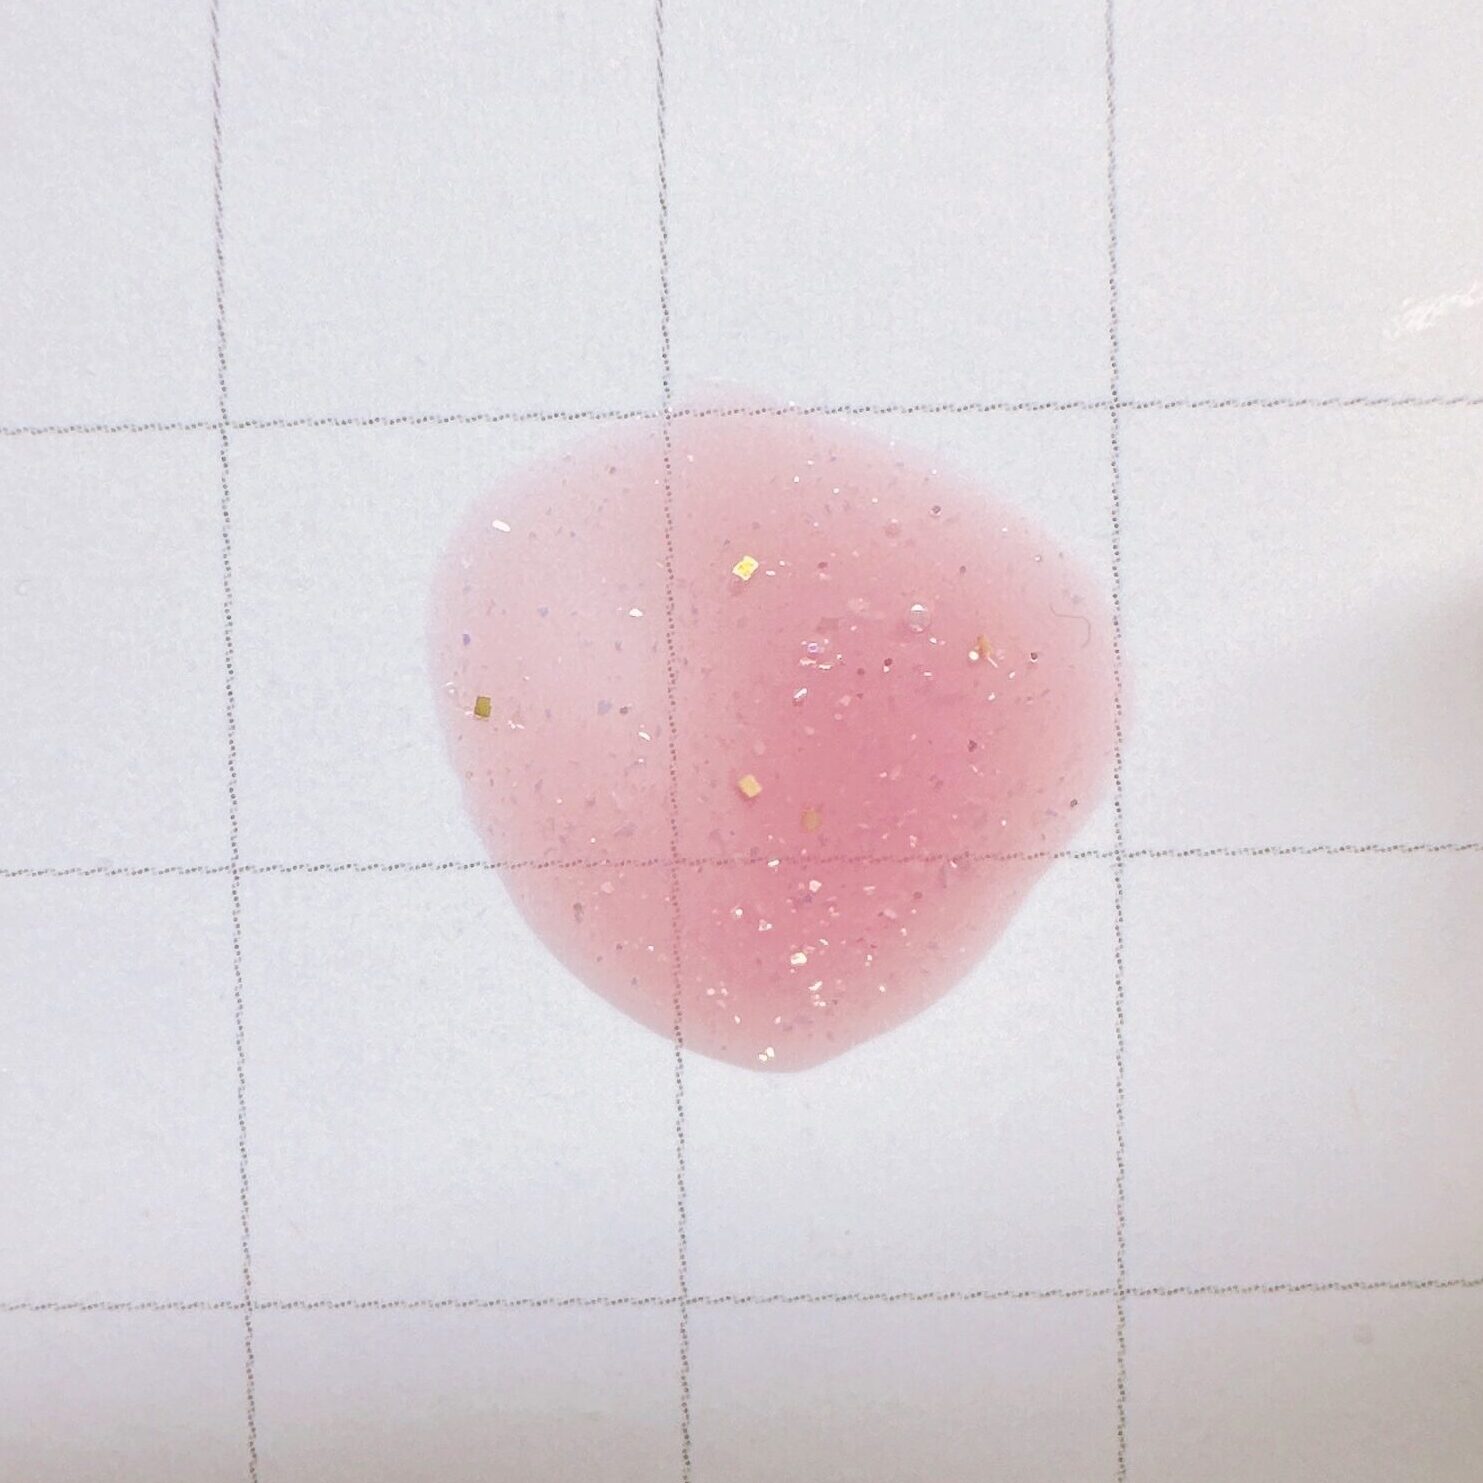 ダイソーTokyo girls collectionコラボのカラージェル＃７６シアーラメピンクの色見本の画像です